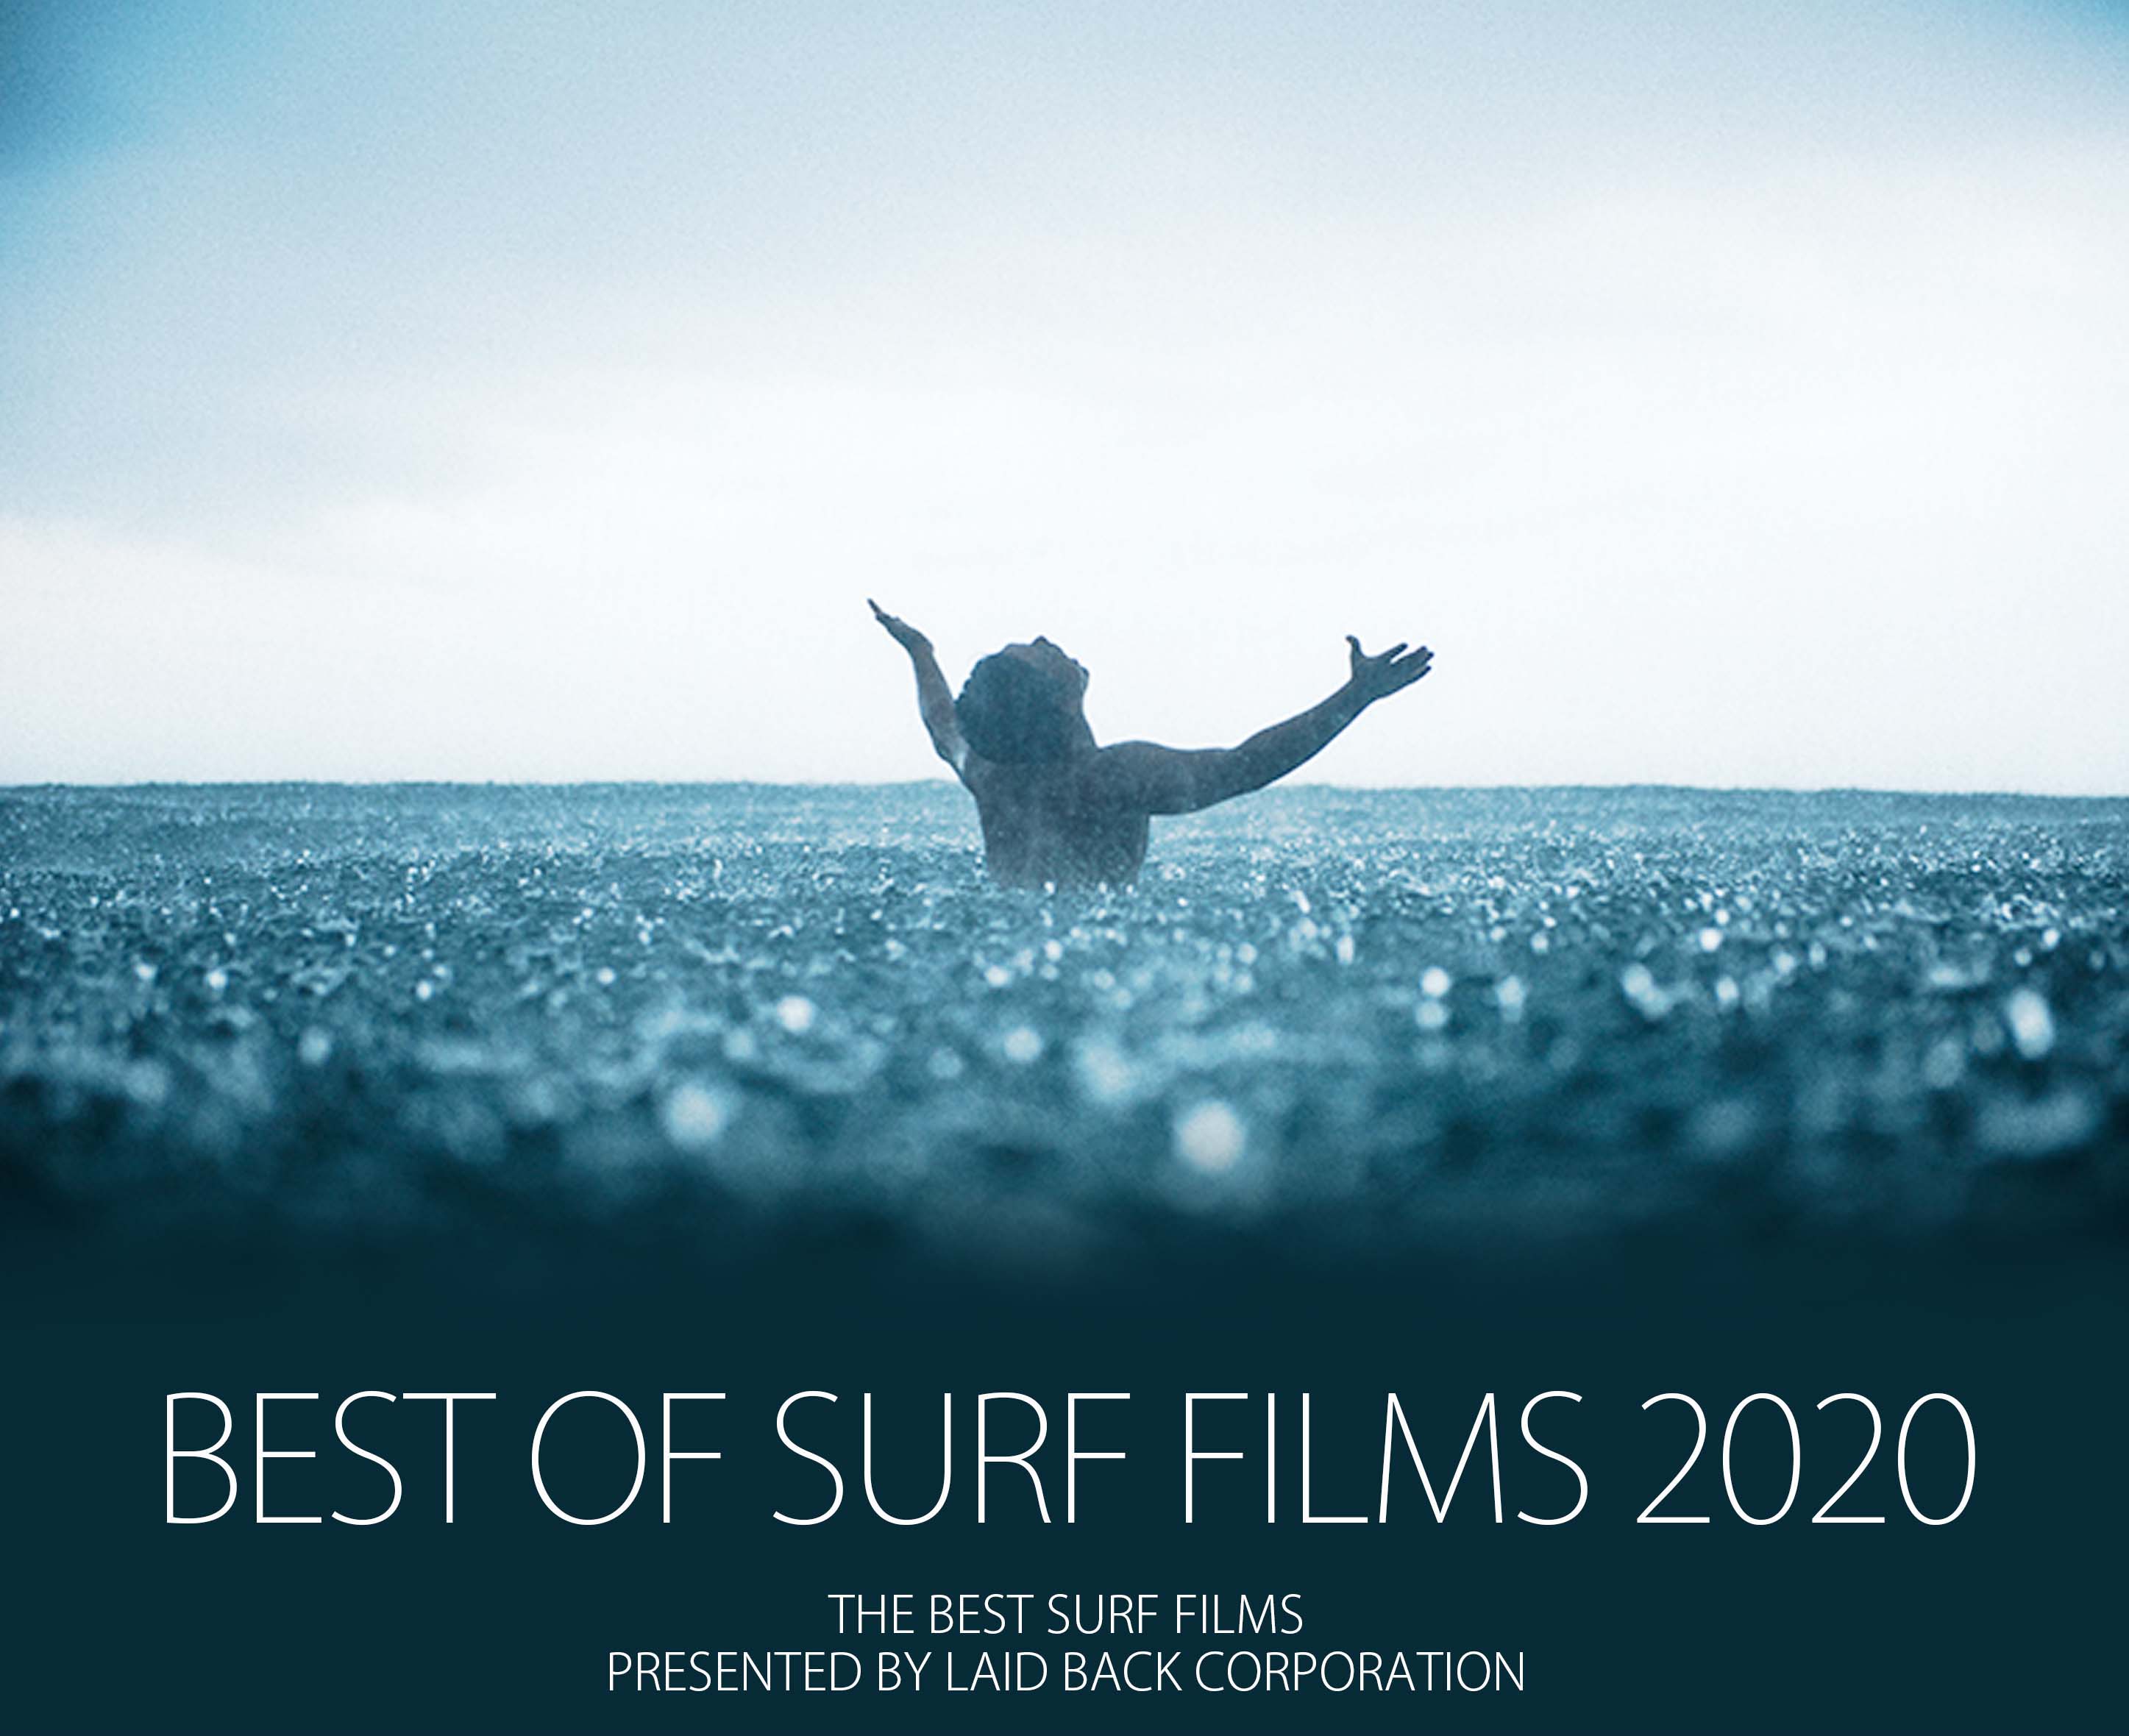 BEST OF SURF FILMS 2020